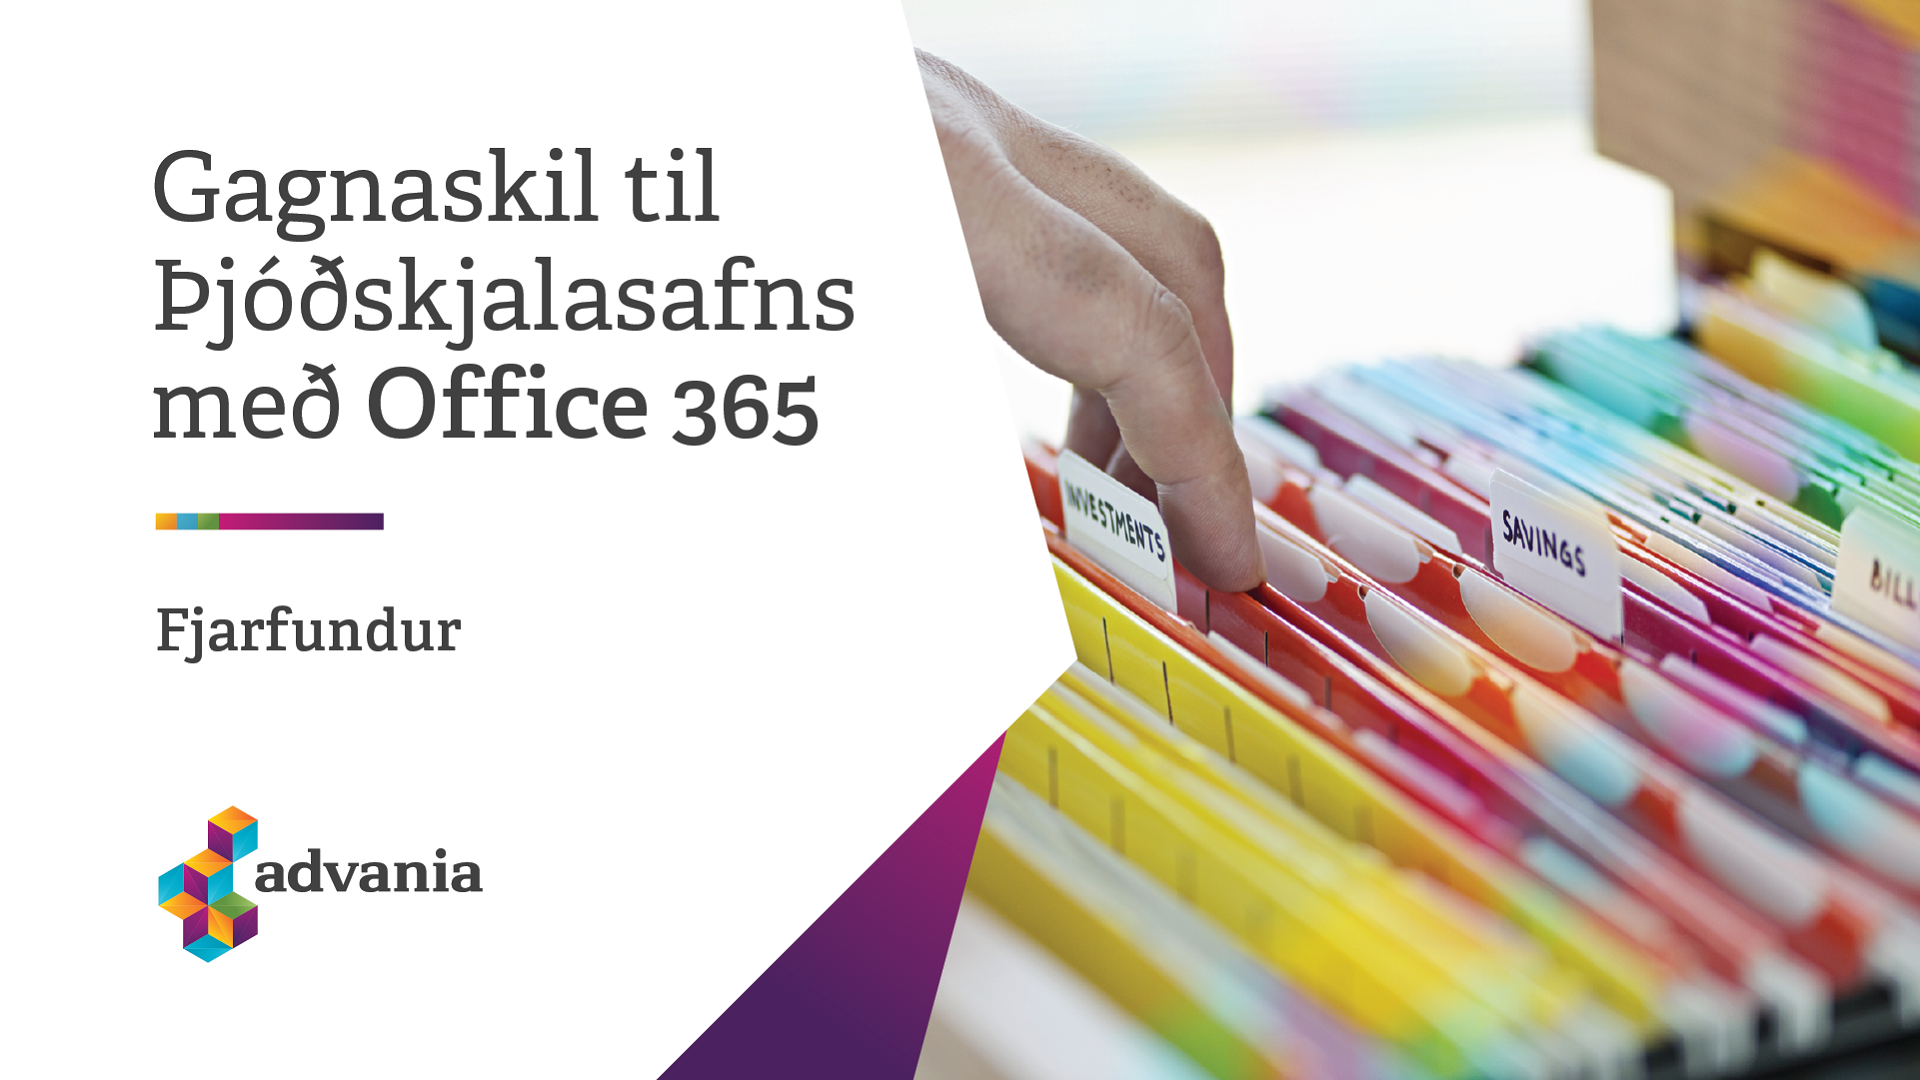 Image for event - Gagnaskil til Þjóðskjalasafns með Office 365